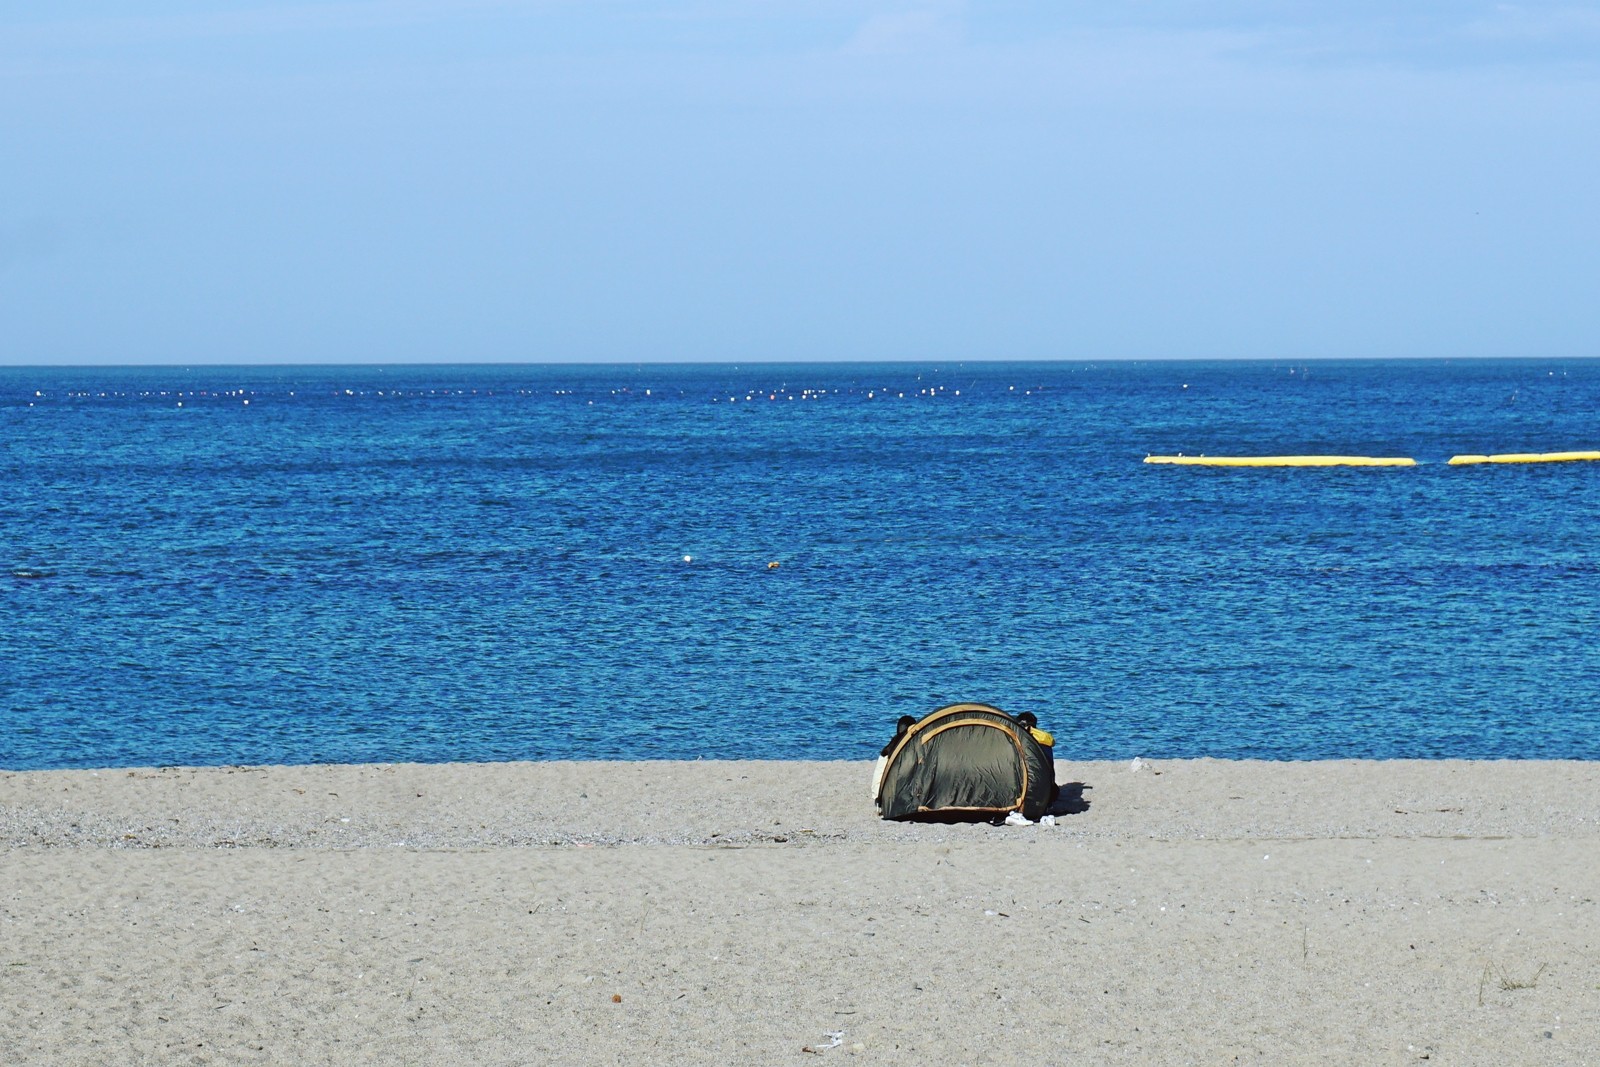 나정고운모래해변에 텐트를 설치한 모습